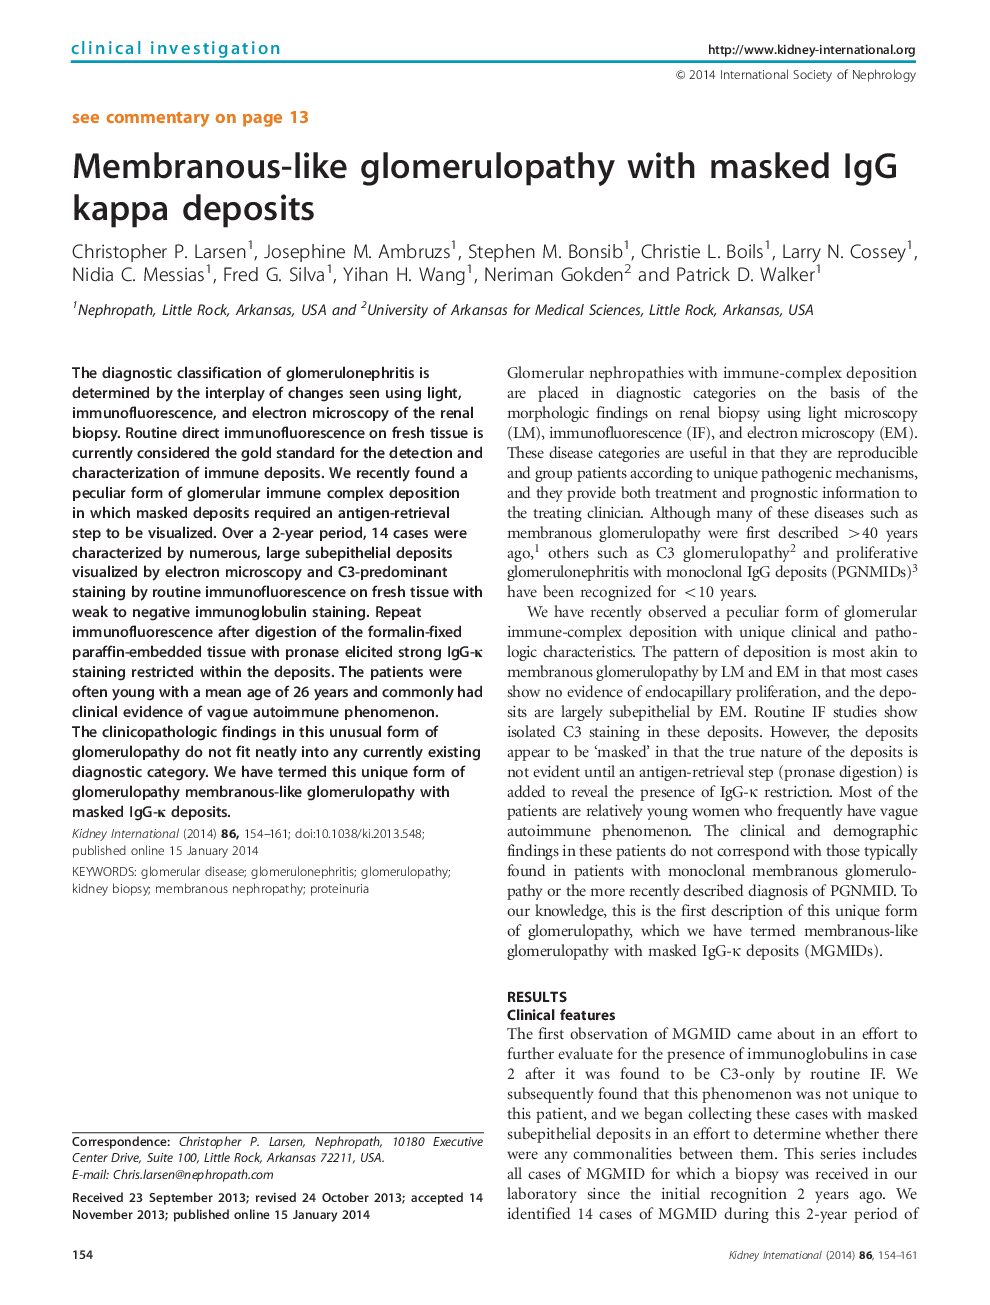 Membranous-like glomerulopathy with masked IgG kappa deposits